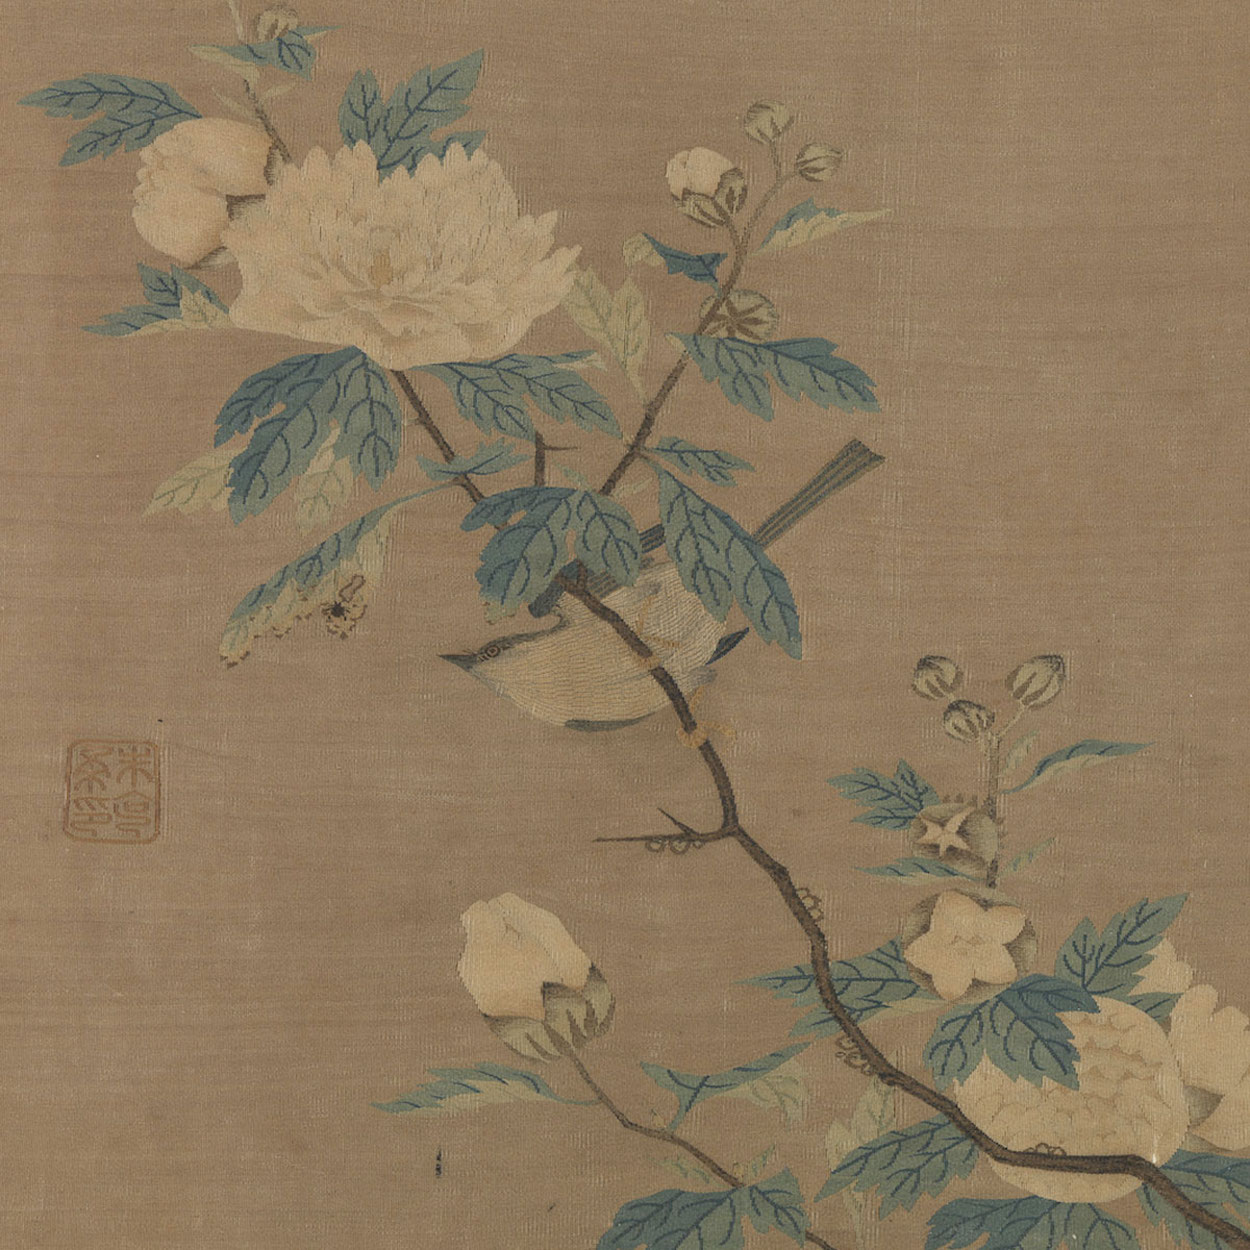 花鳥圖 by Zhu Kerou - 1127-1279 